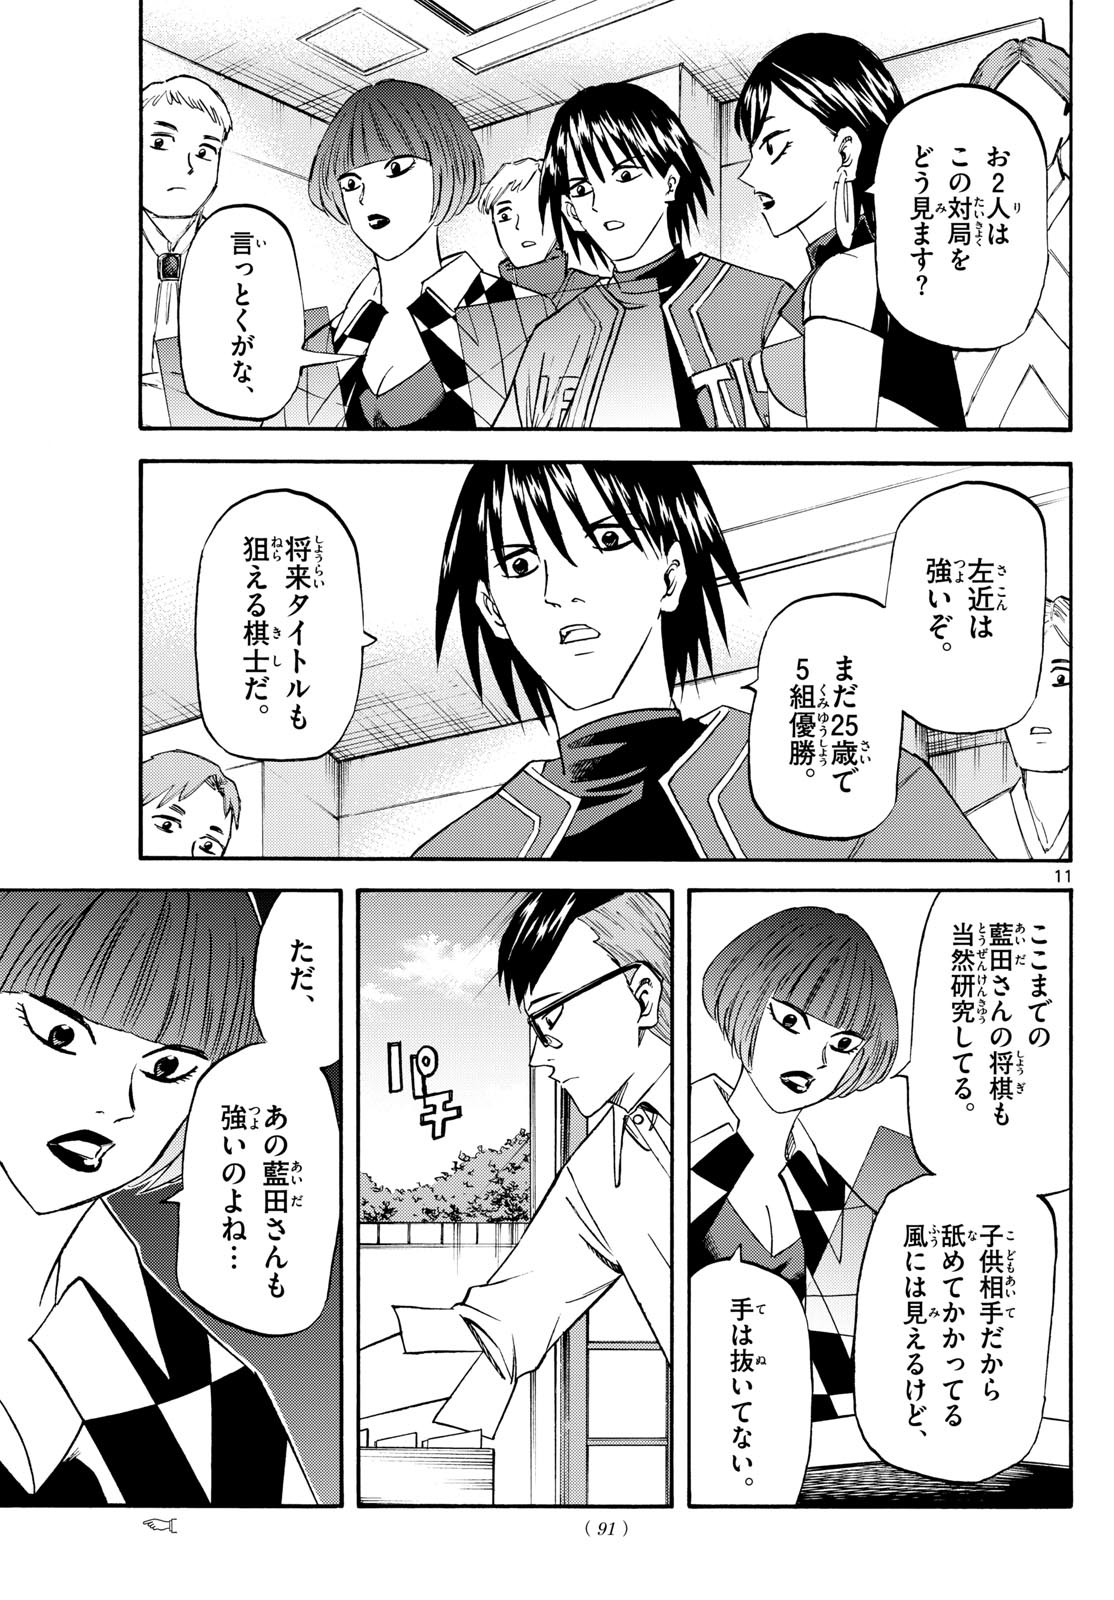 Ryu-to-Ichigo - Chapter 196 - Page 11